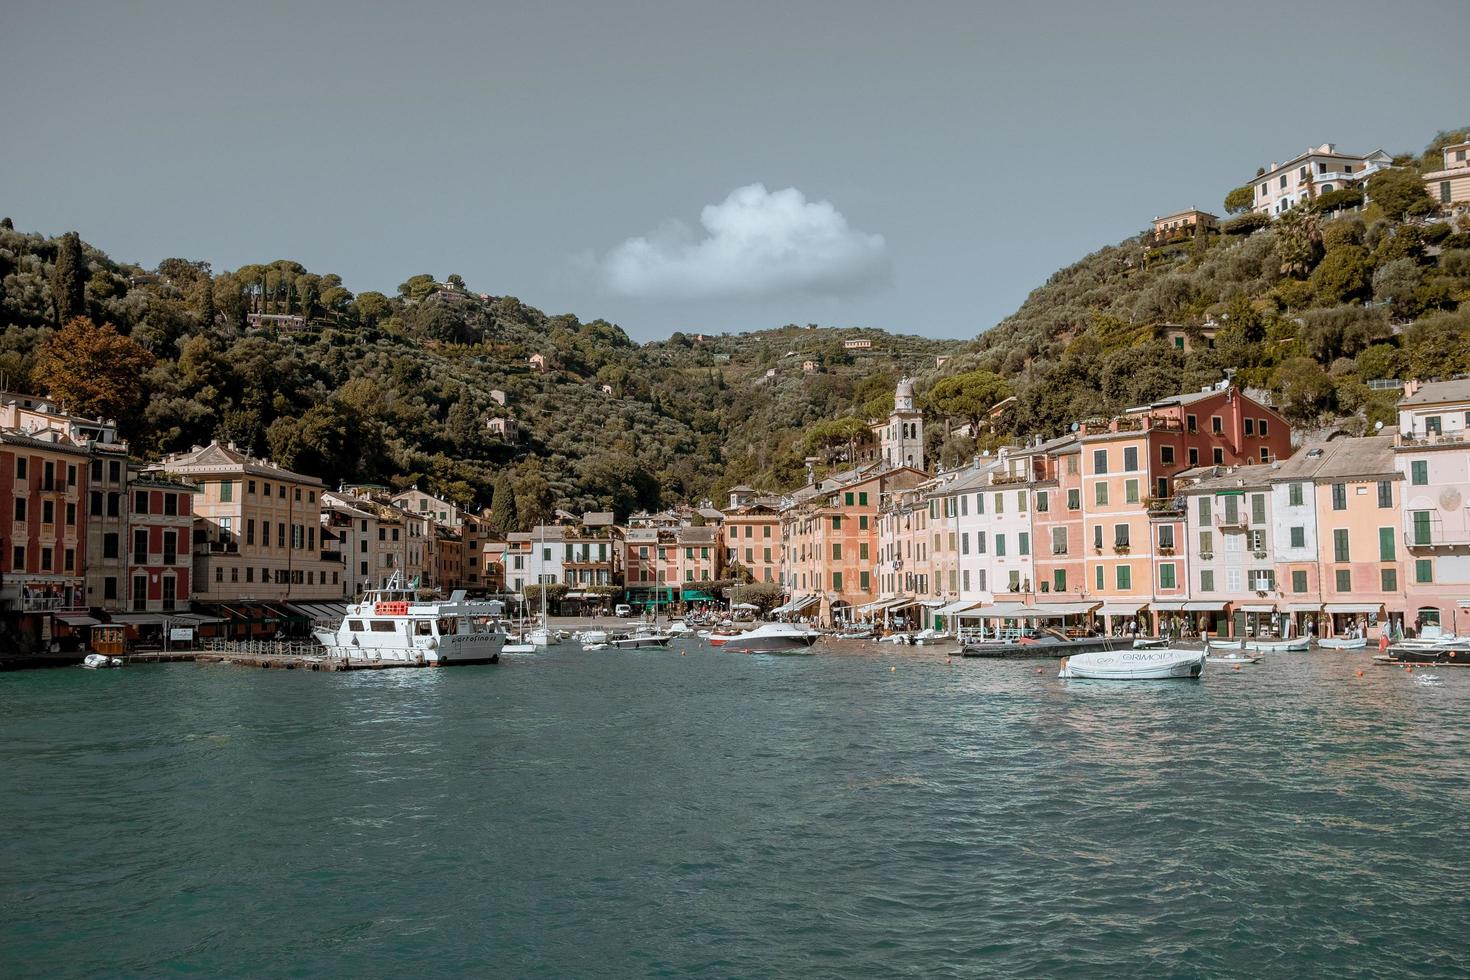 portofino, italie, 2020 - bateaux dans le port près de la ville photo